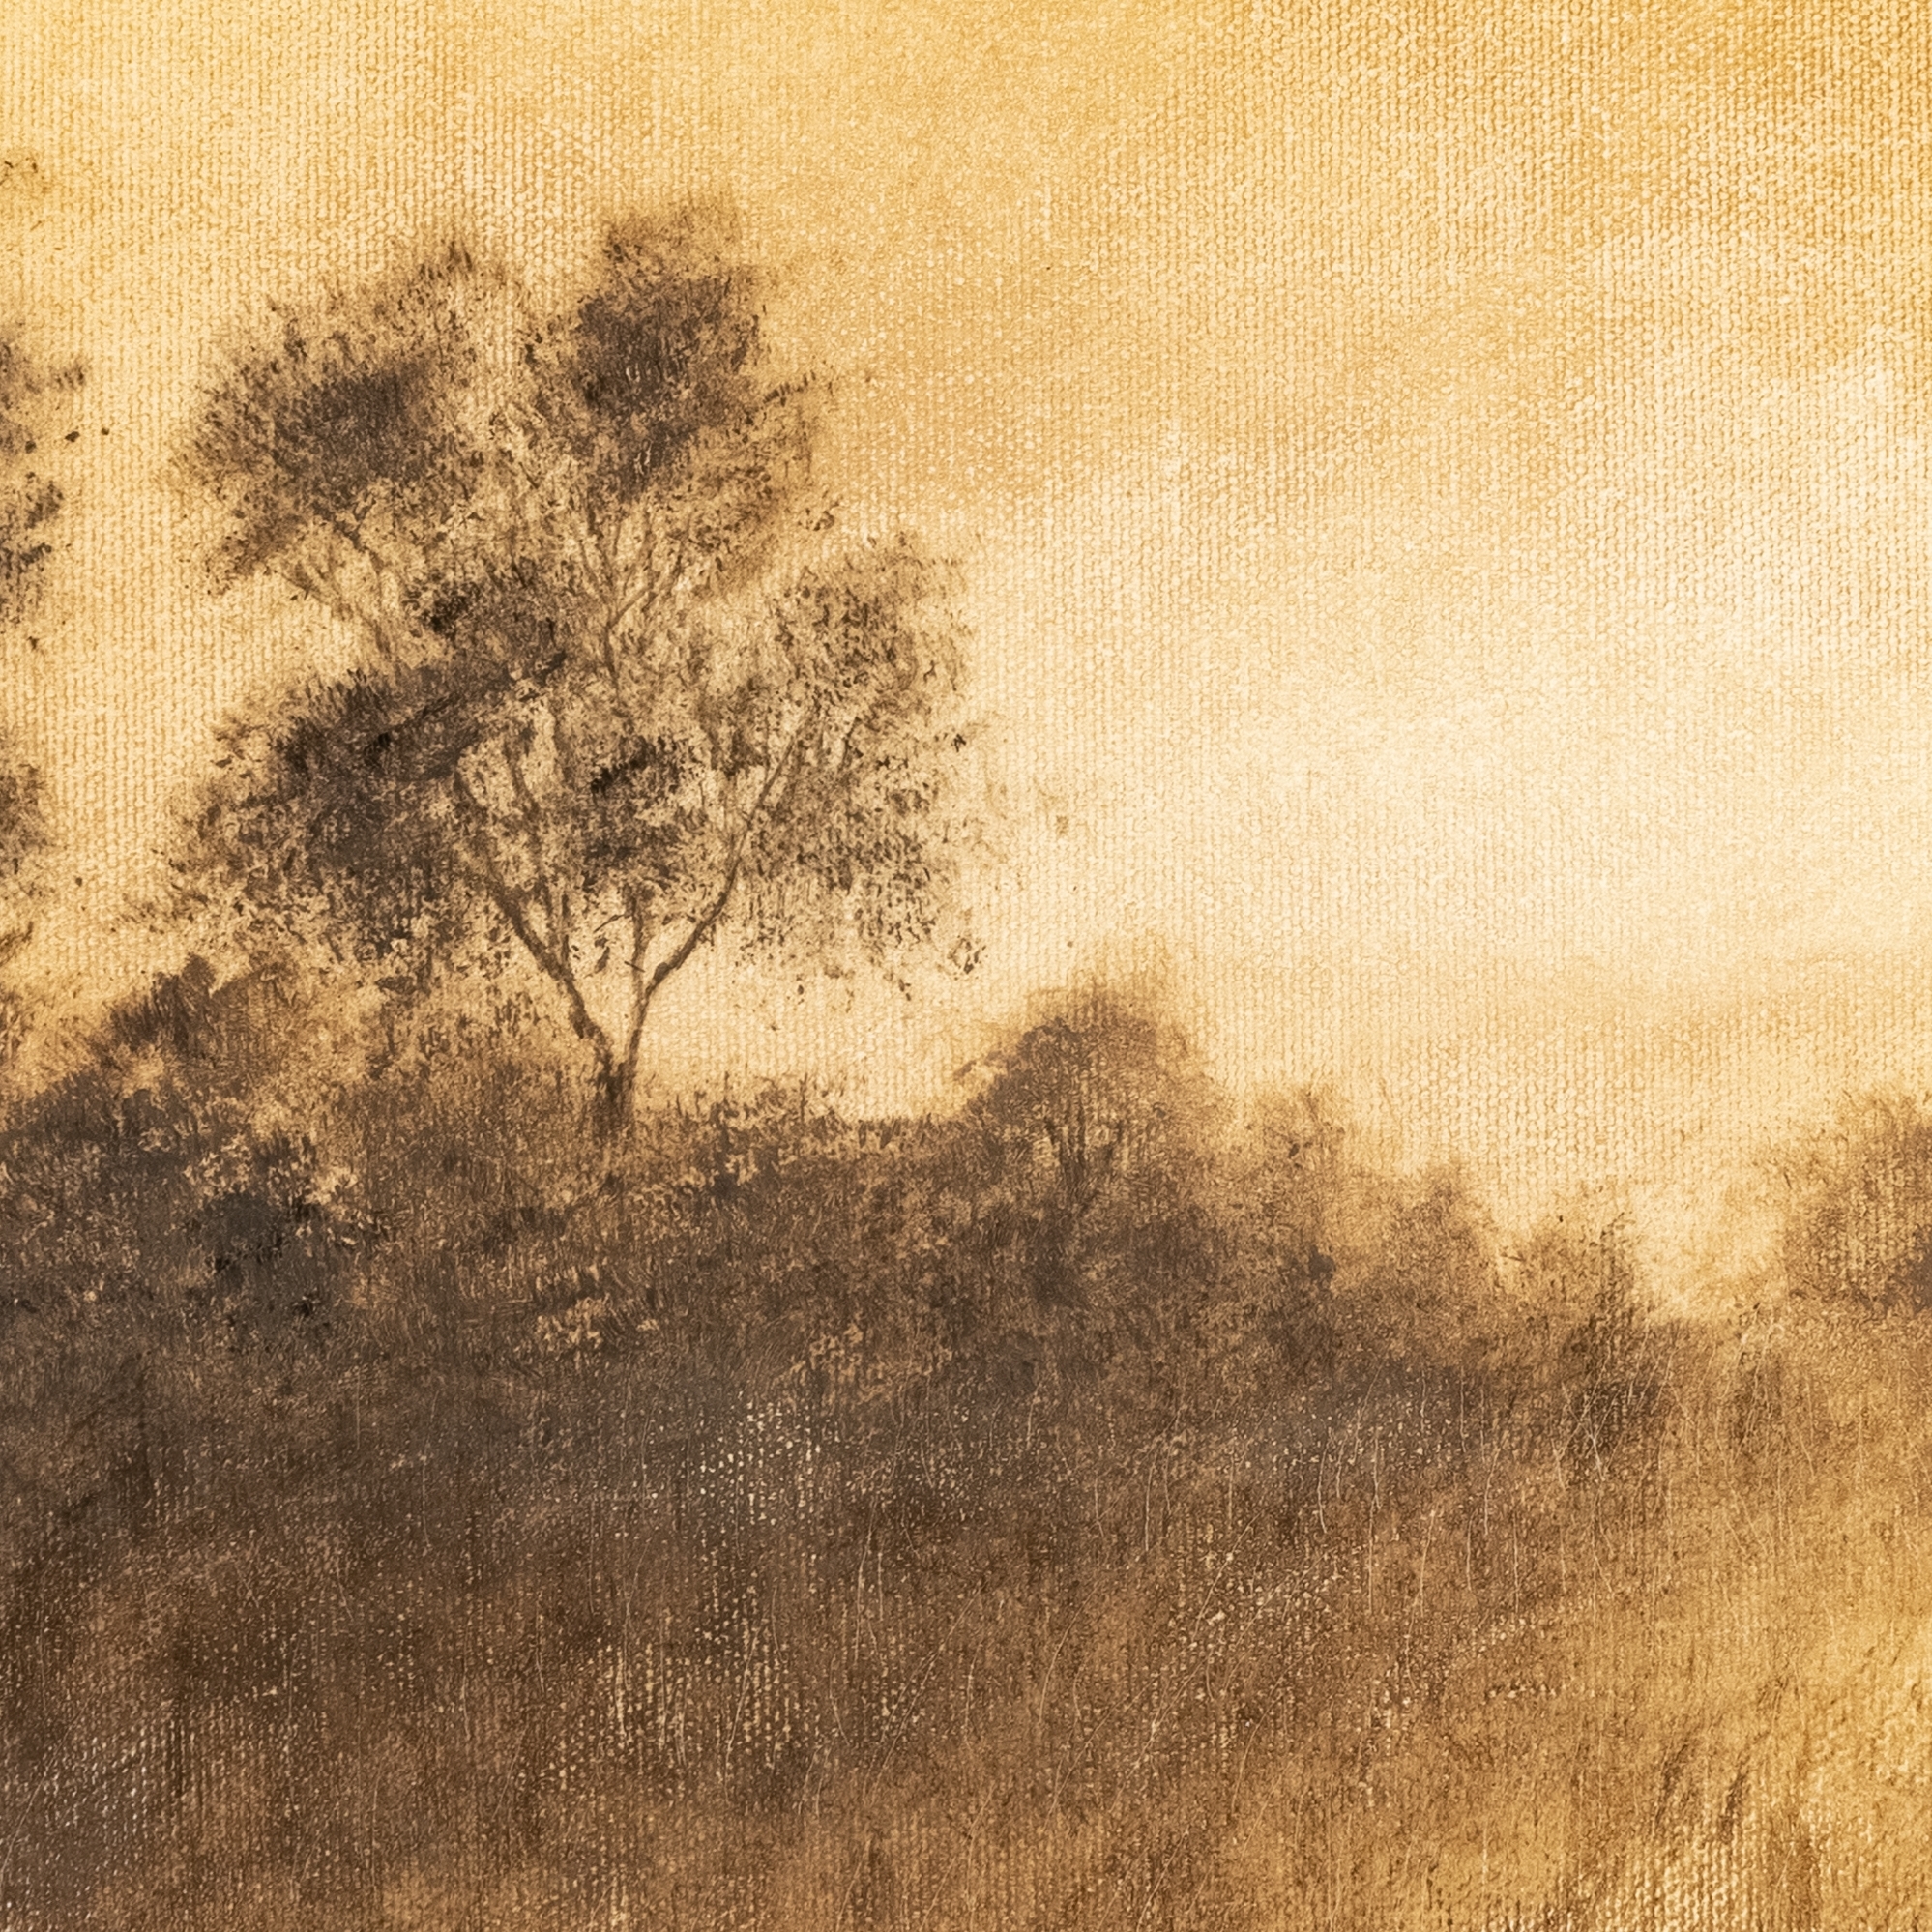 Hillside Haze VIII by Aileen Fitzgerald - Rustic 1.5 Walnut - Image 3